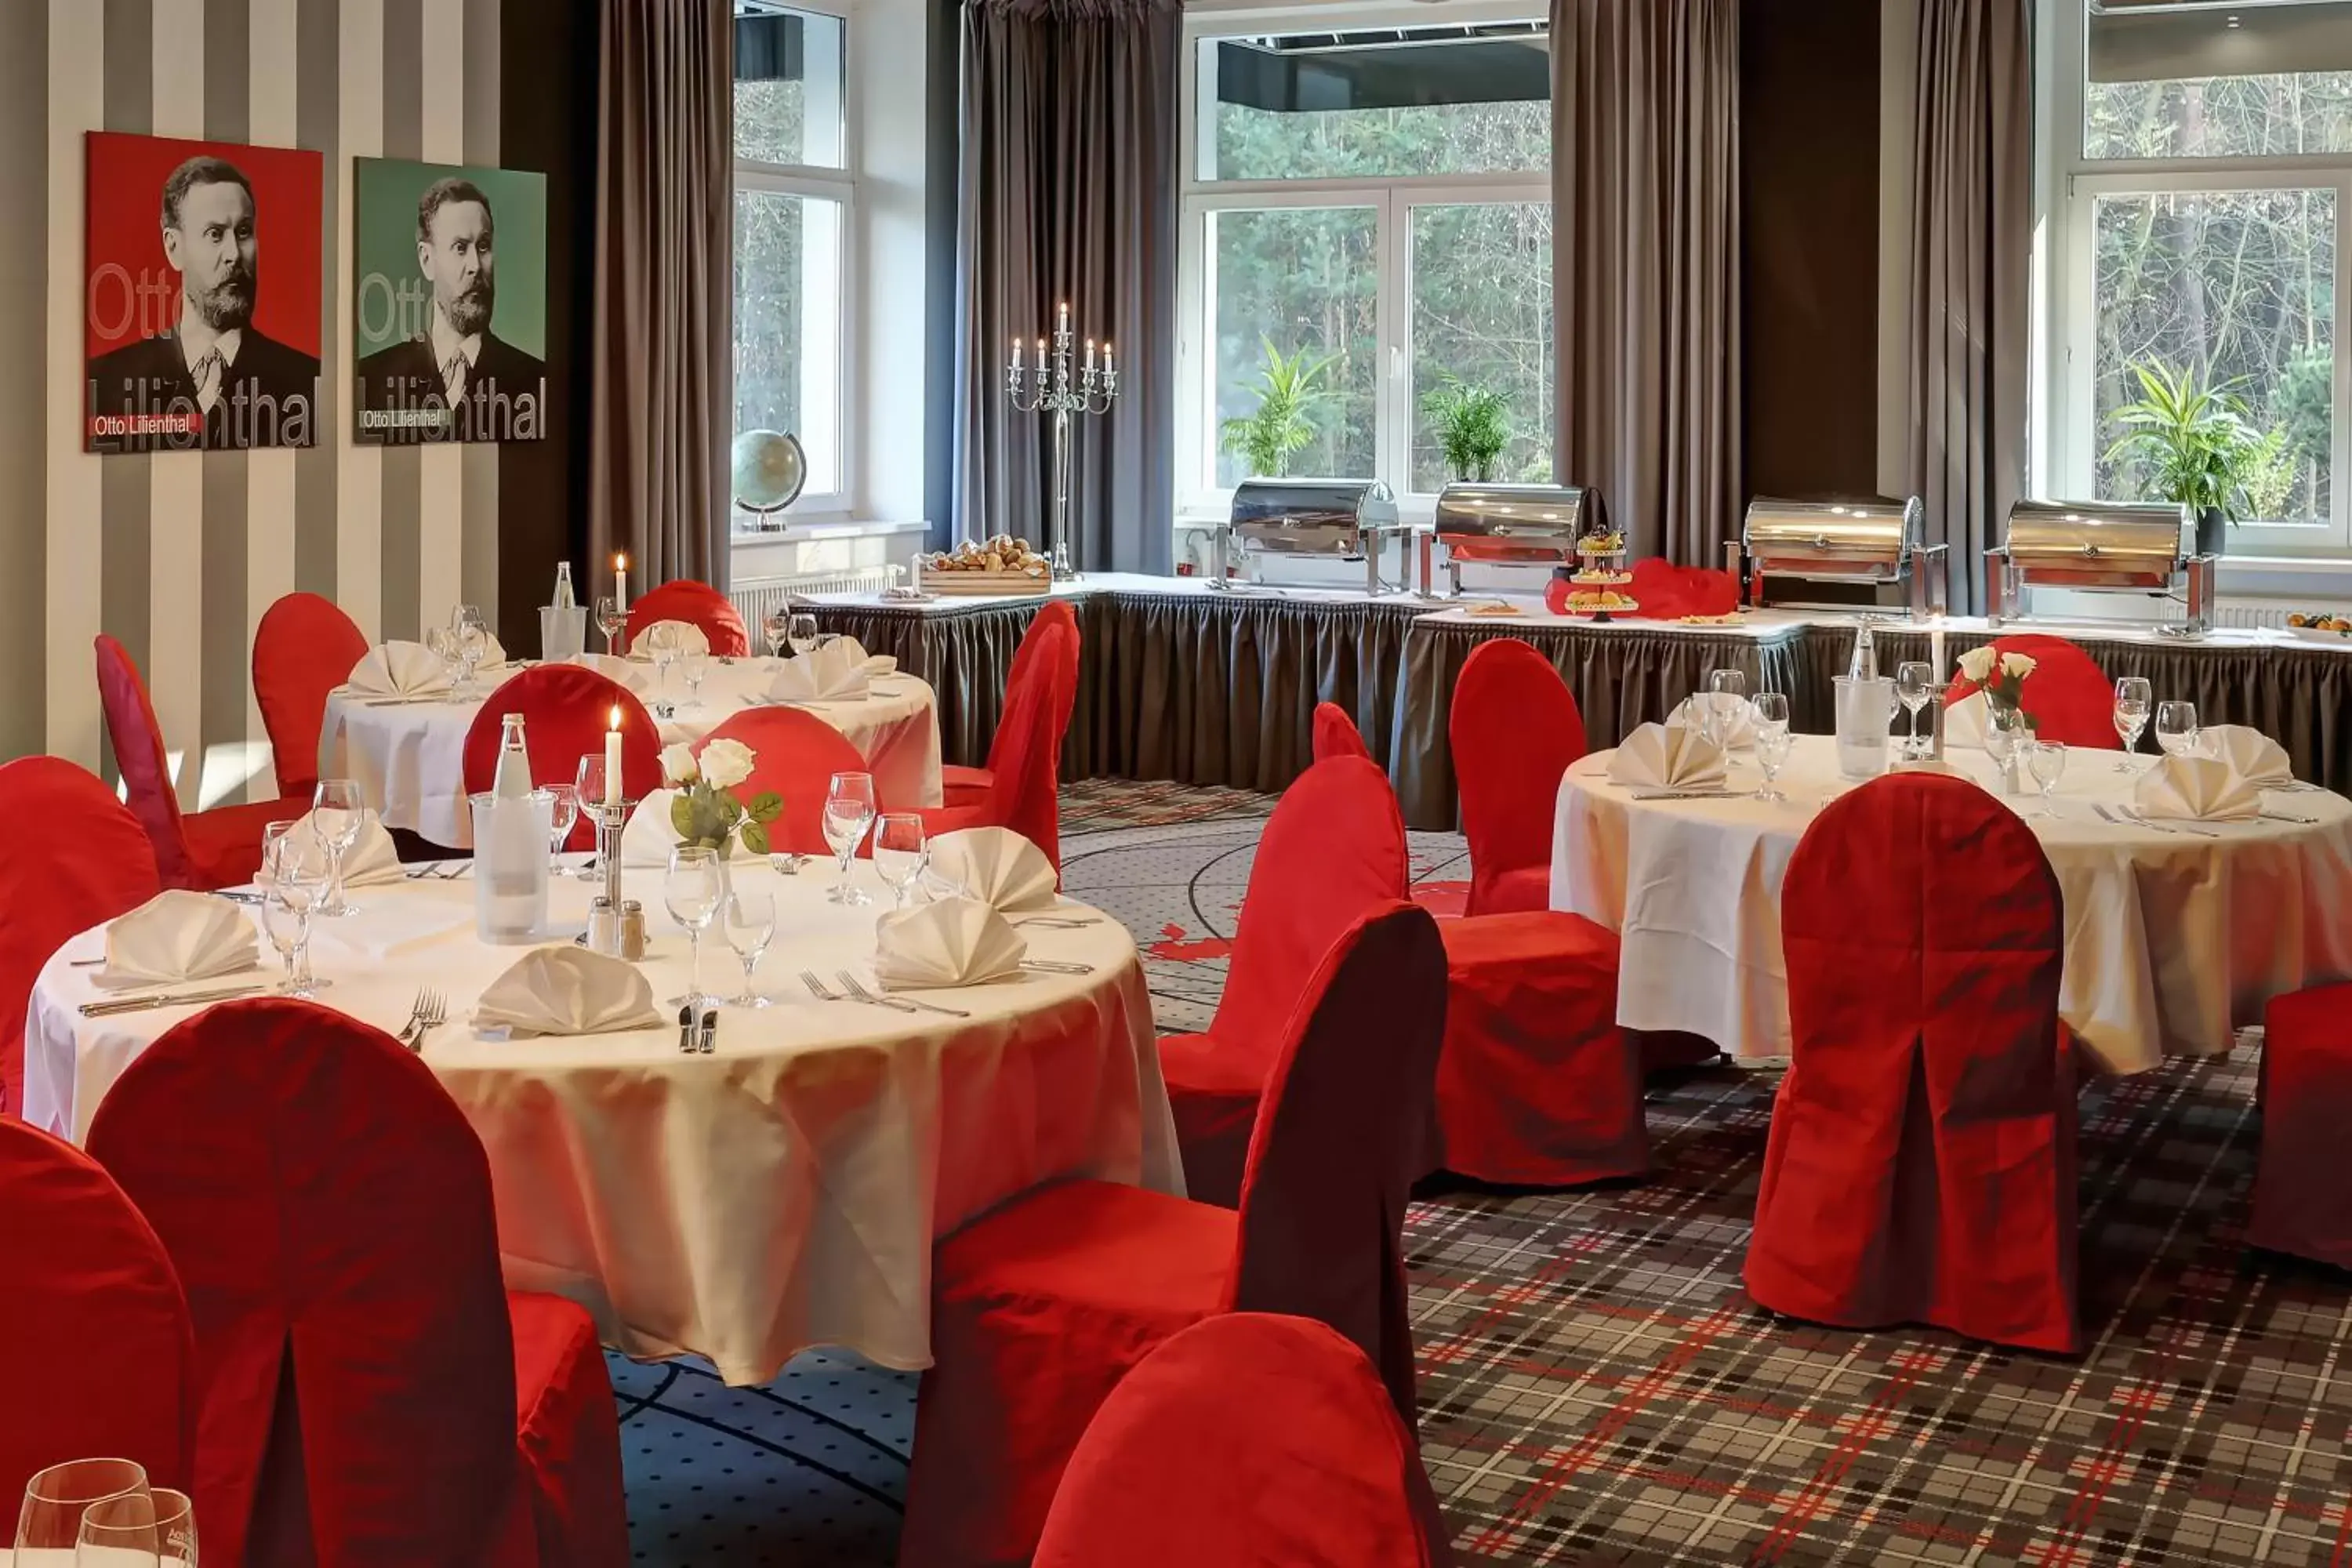 Banquet/Function facilities, Banquet Facilities in Grünau Hotel